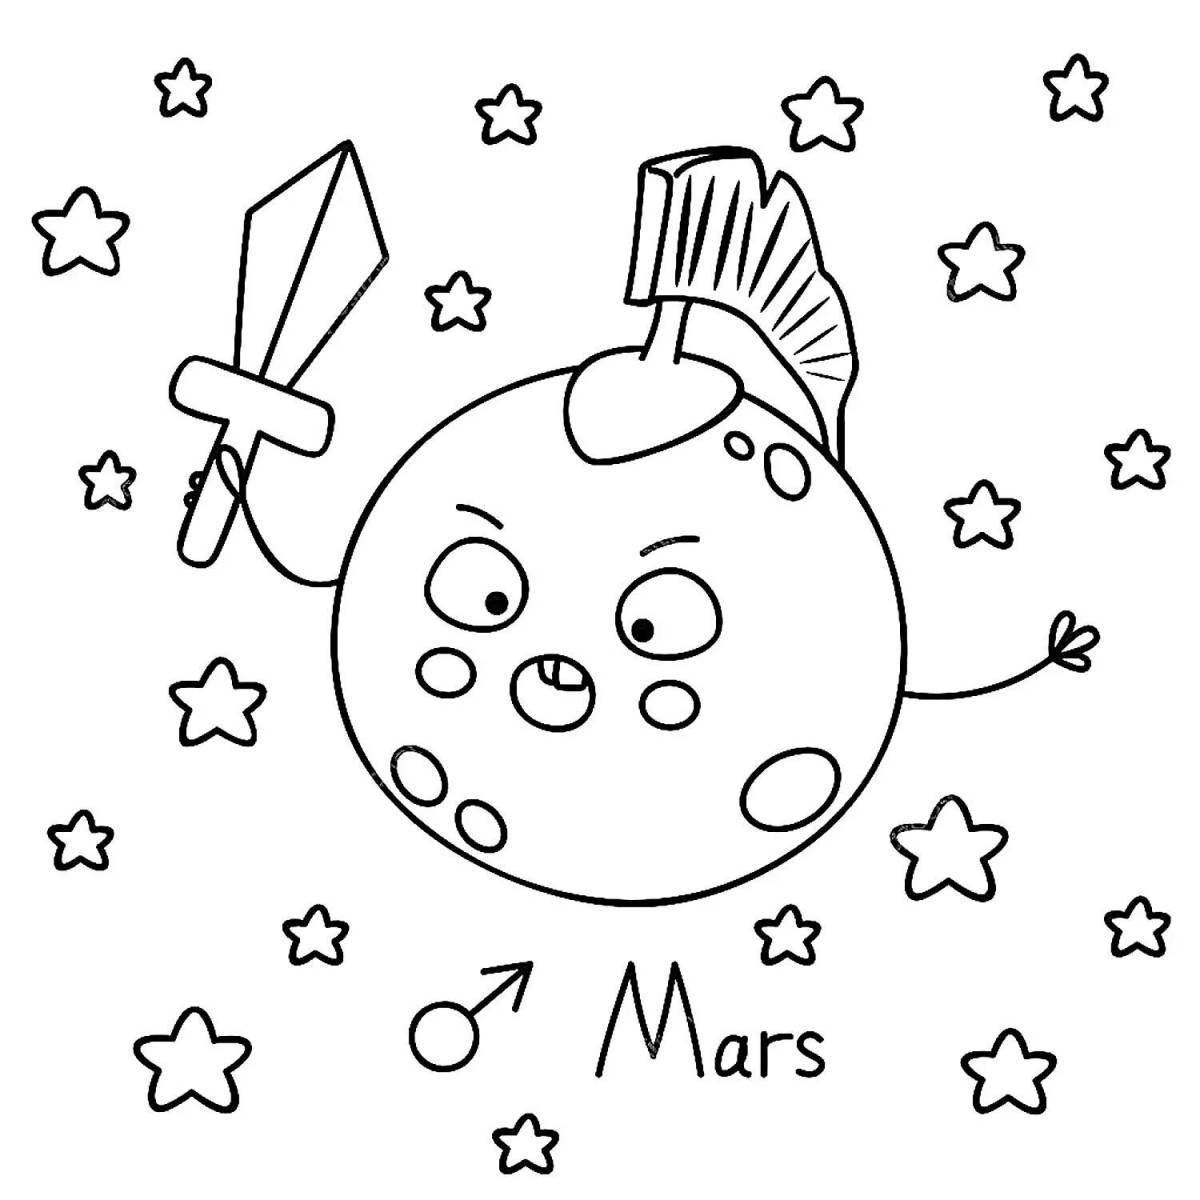 Mars #2